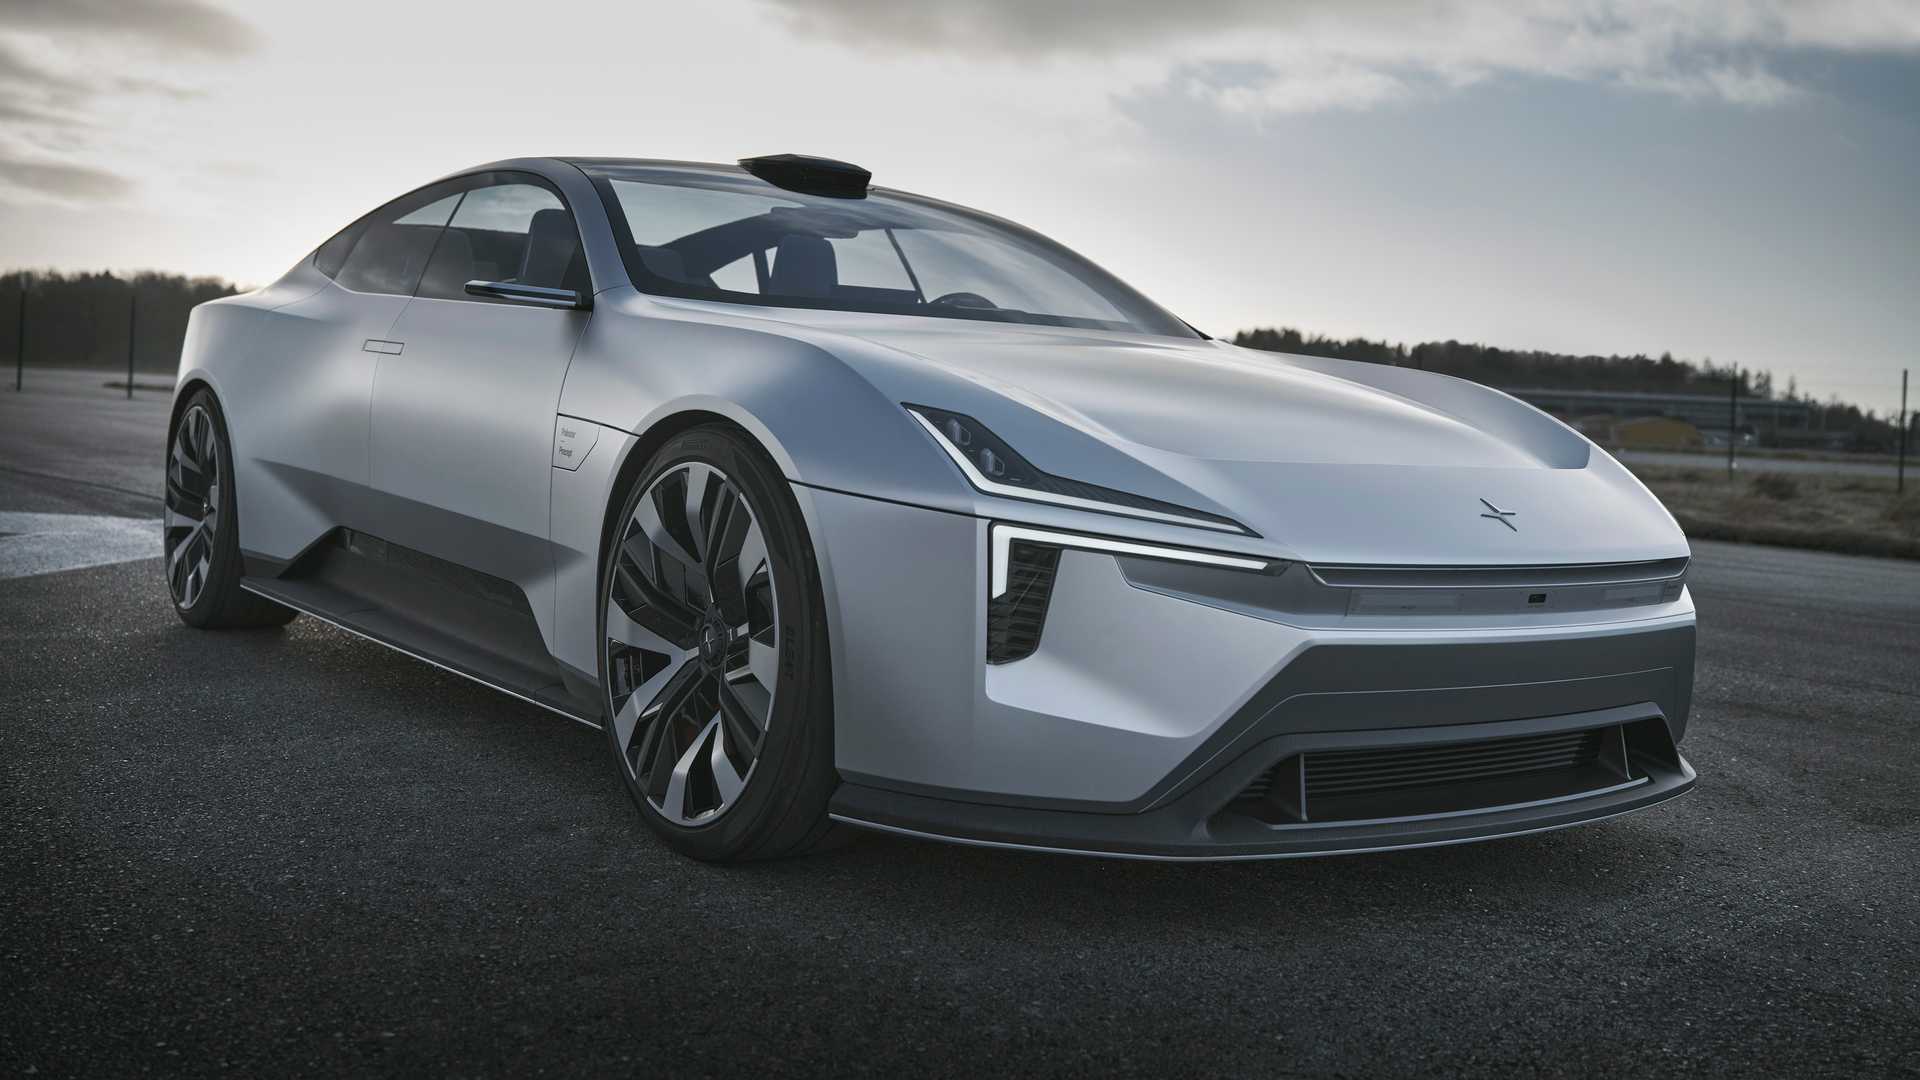 ส่องรูปลักษณ์สุดหรูรถใหม่ Polestar Precept Concept ว่าที่เอสยูวีไฟฟ้ารุ่นแรกของแบรนด์